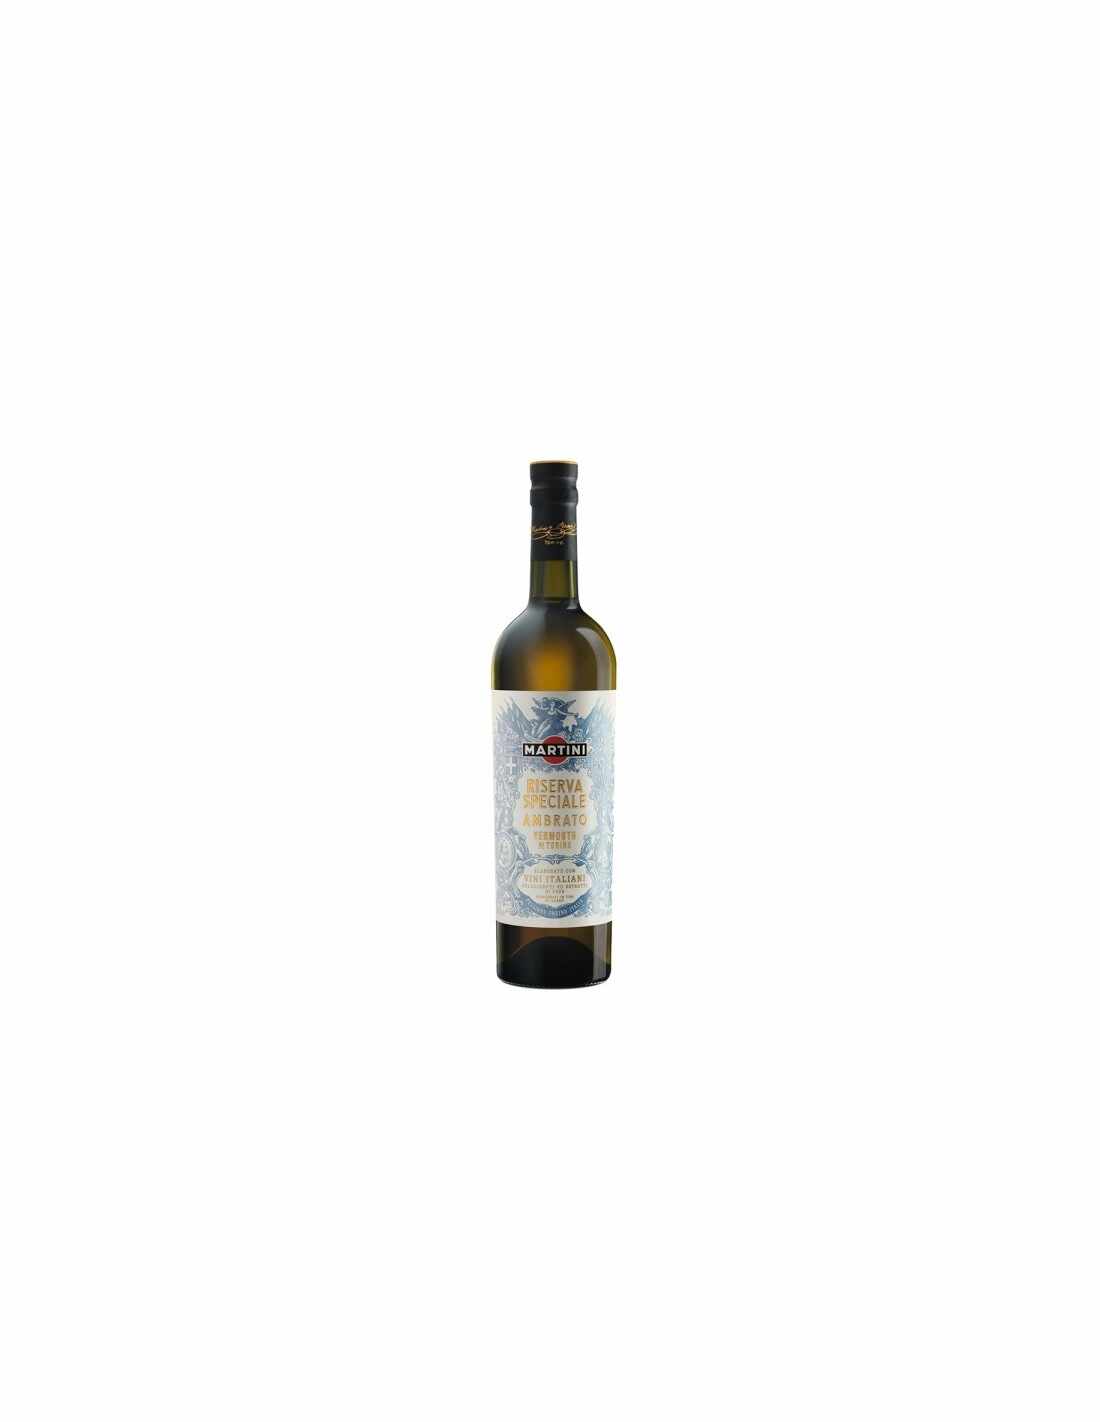 Vermut Martini Ambrato, 18% alc., 0.75L, Italia